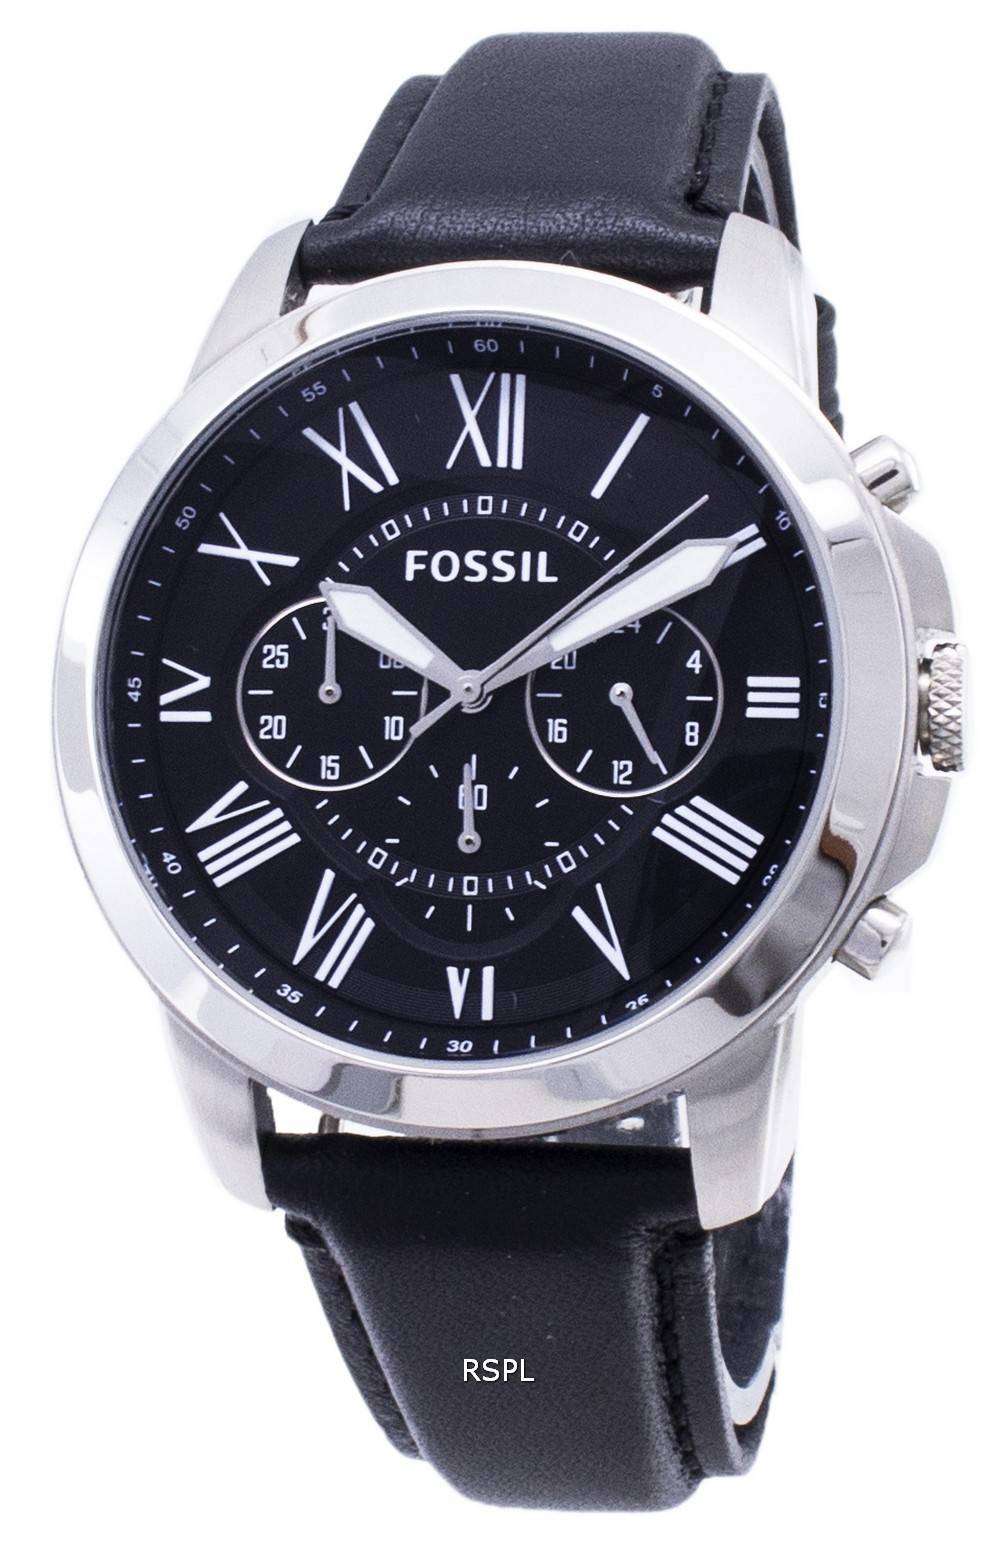 Fossil Grant Chronograph pulsera de cuero negro FS4812 reloj de